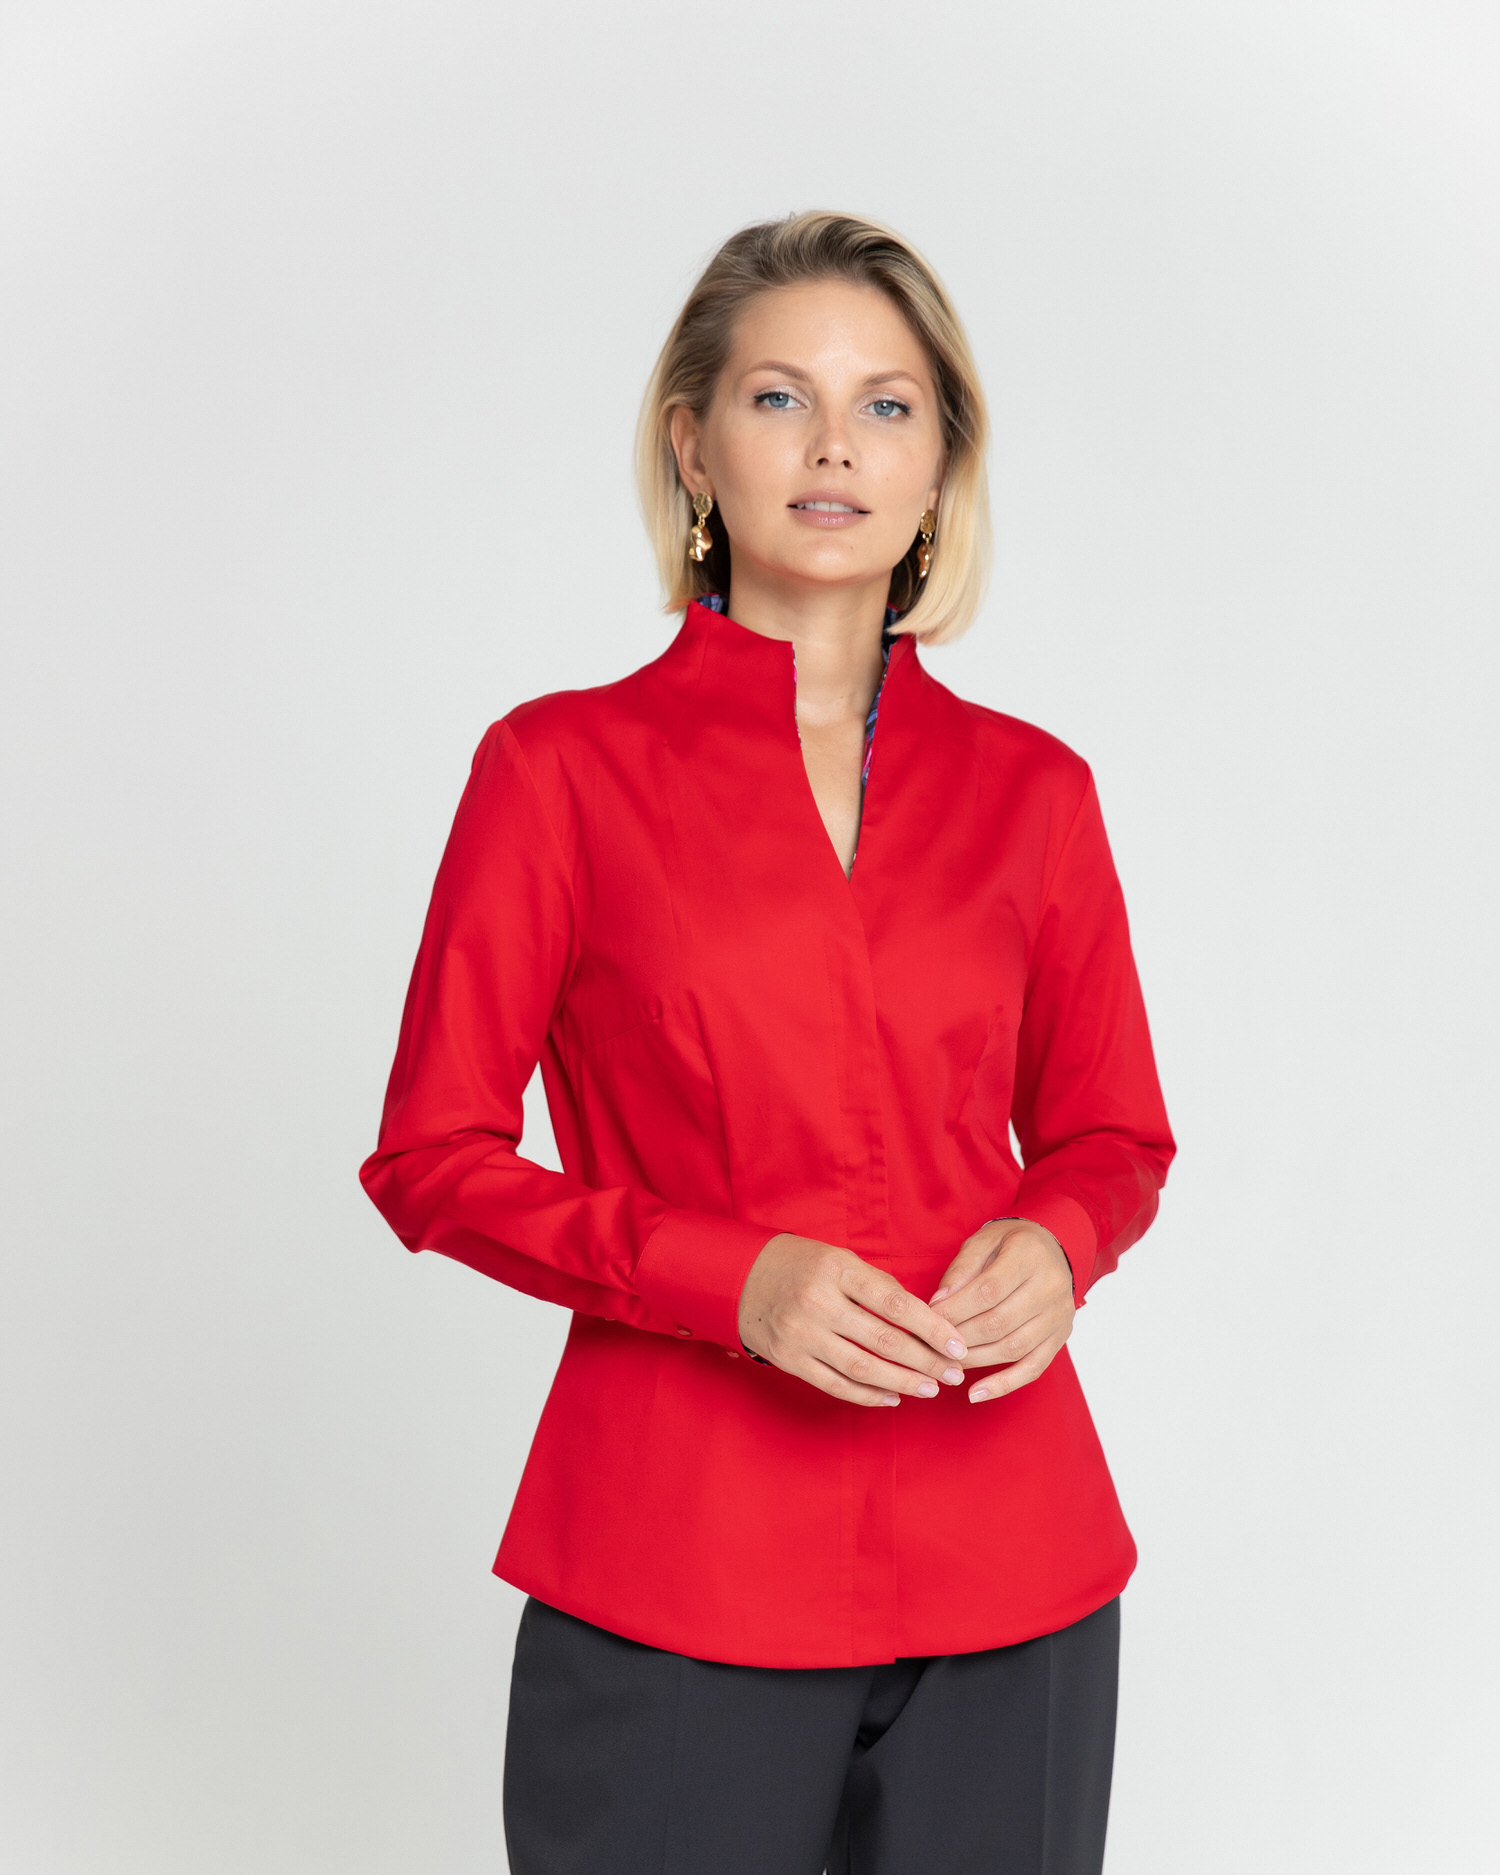 Женская рубашка воротник стойка красная с отделкой протеи - 8344 от byME 